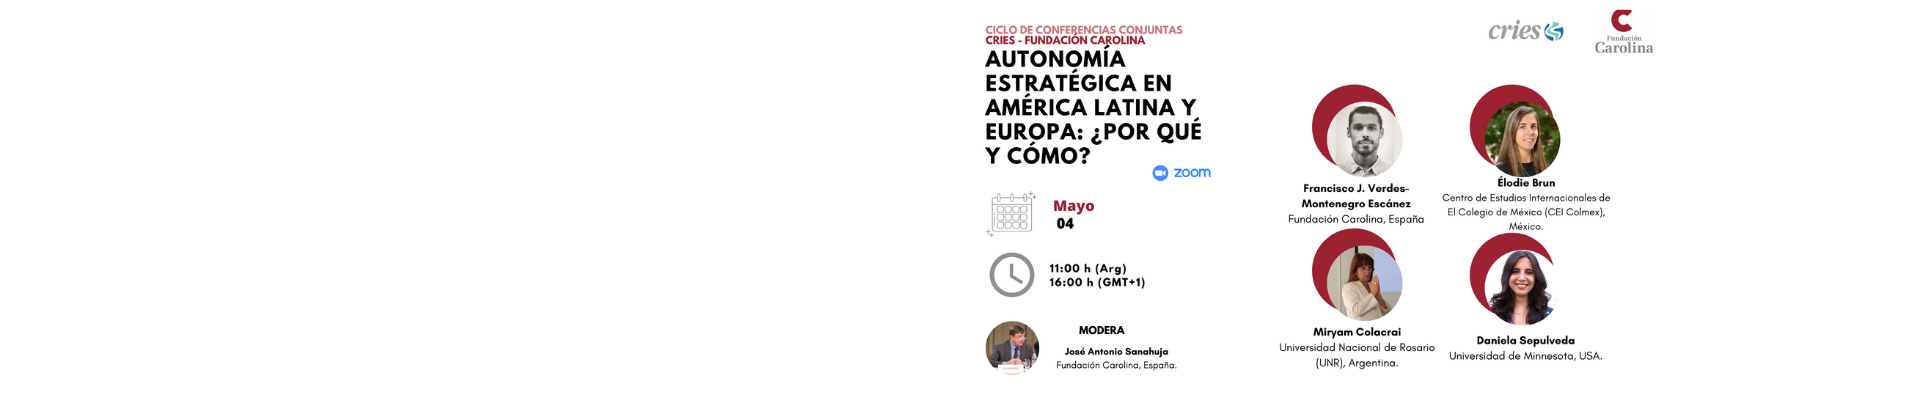 Ciclo de conferencias conjuntas (Fundación Carolina – CRIES): «Autonomía estratégica en América Latina y Europa: ¿Por qué y cómo?»